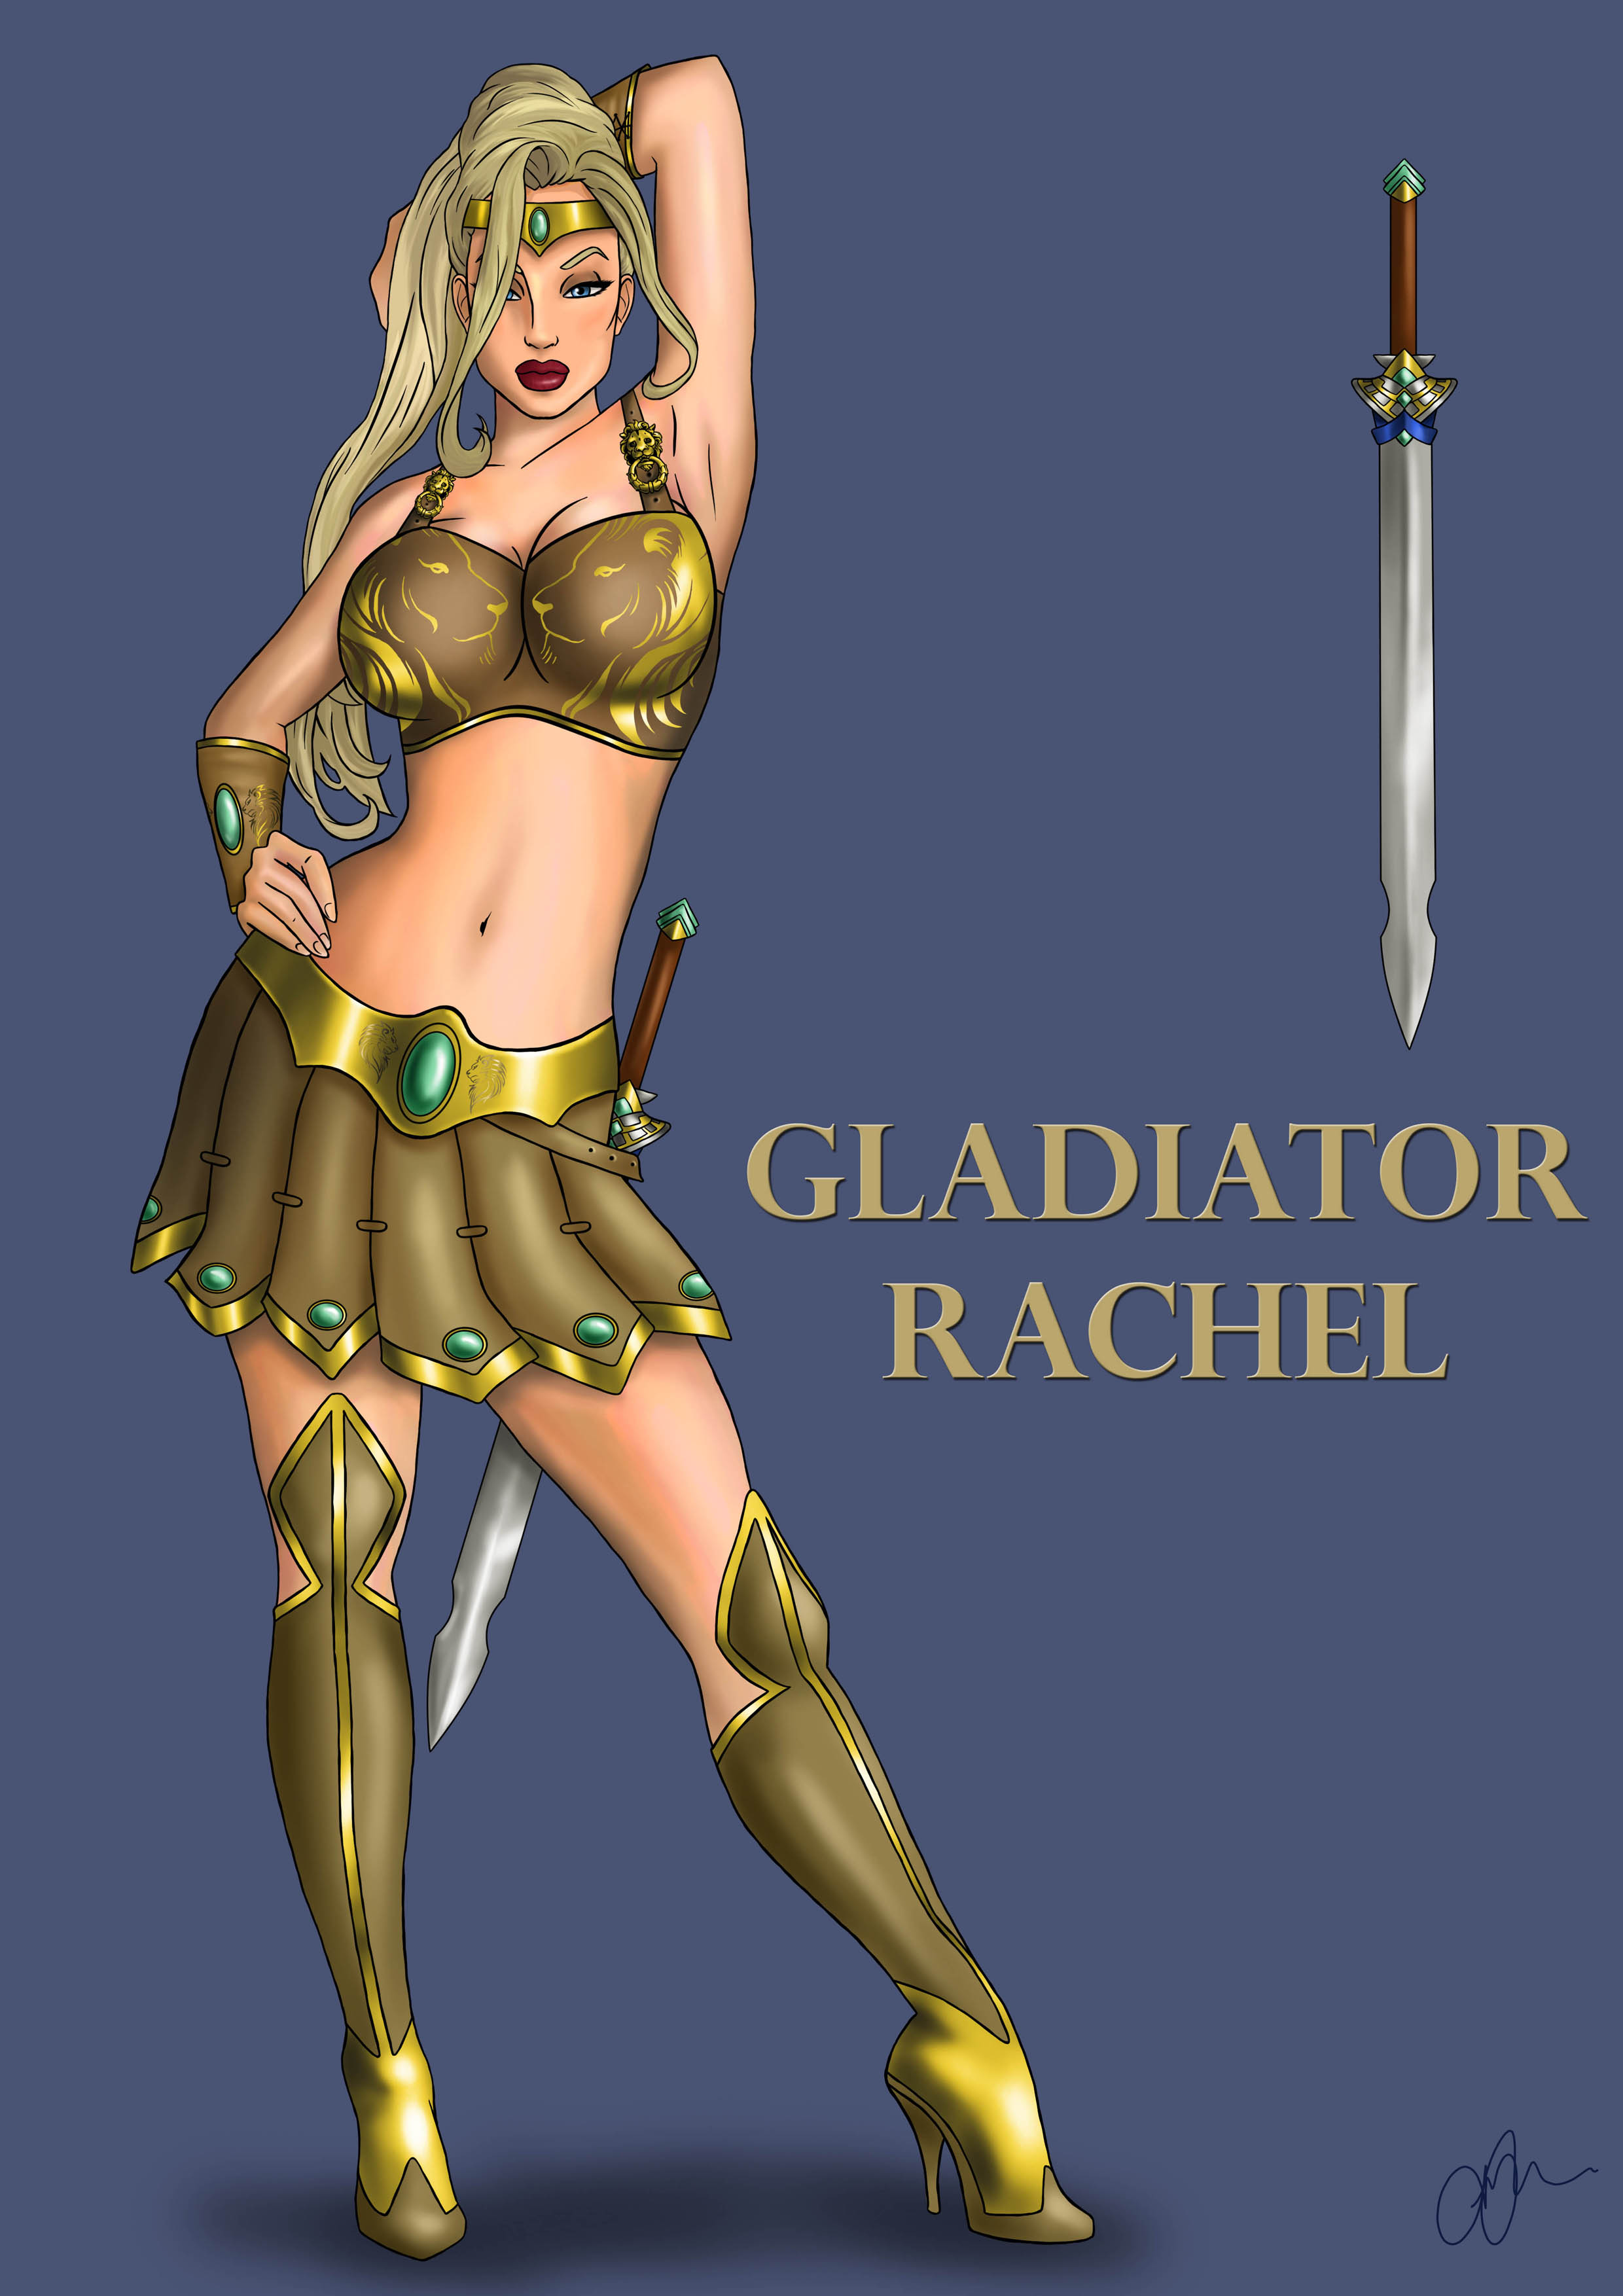 Rachel Gladiator costume LQ.jpg